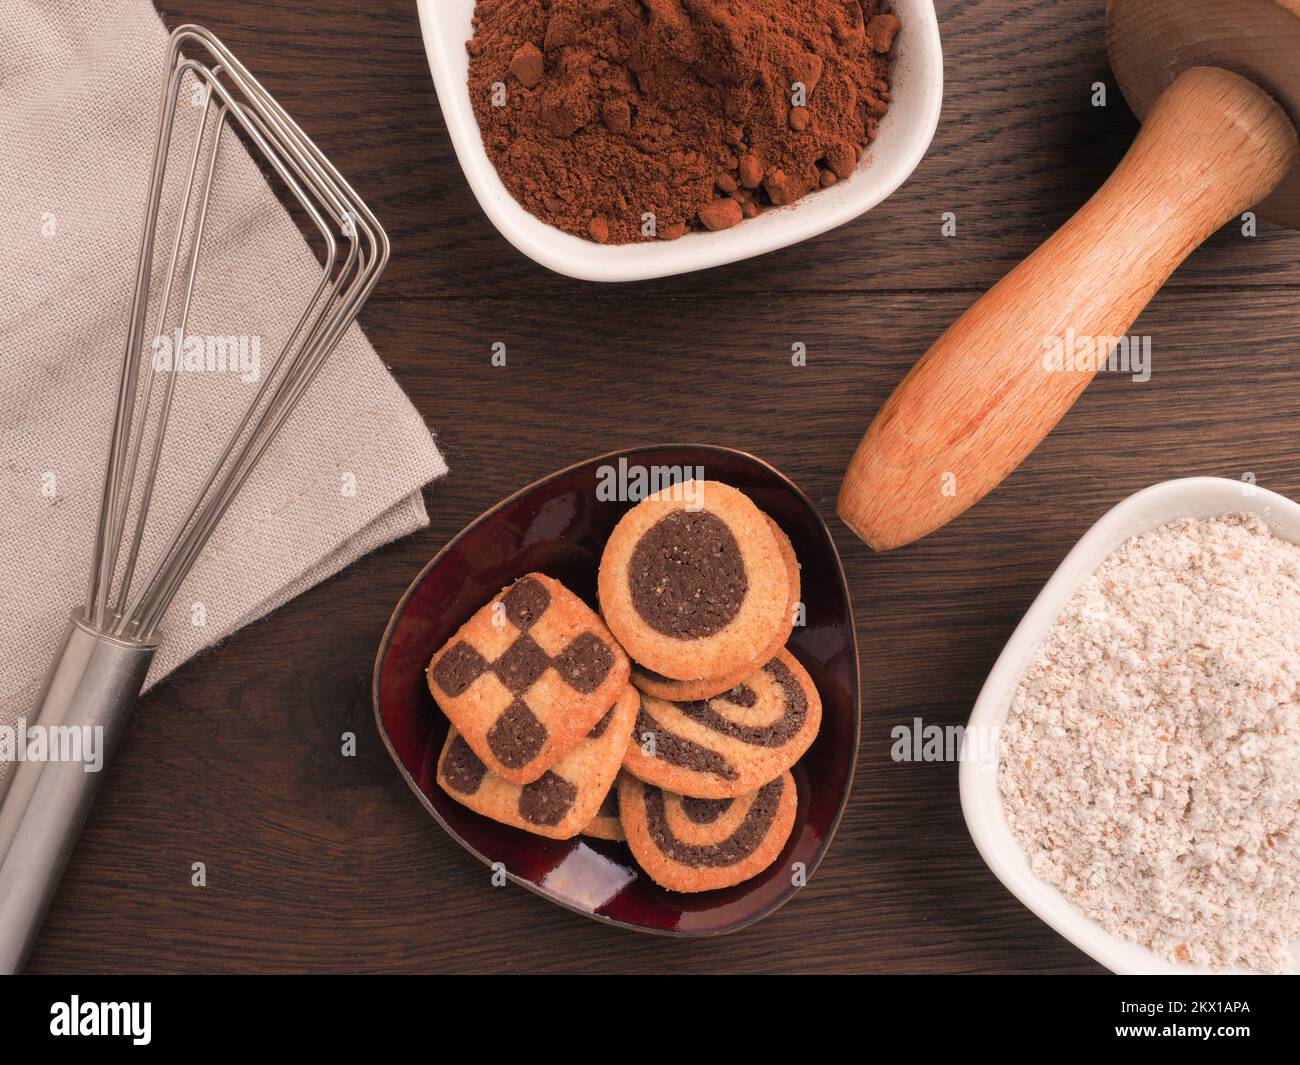 Schwarz-weiße Kekse auf einem hölzernen Küchentisch mit Backutensilien Stockfoto